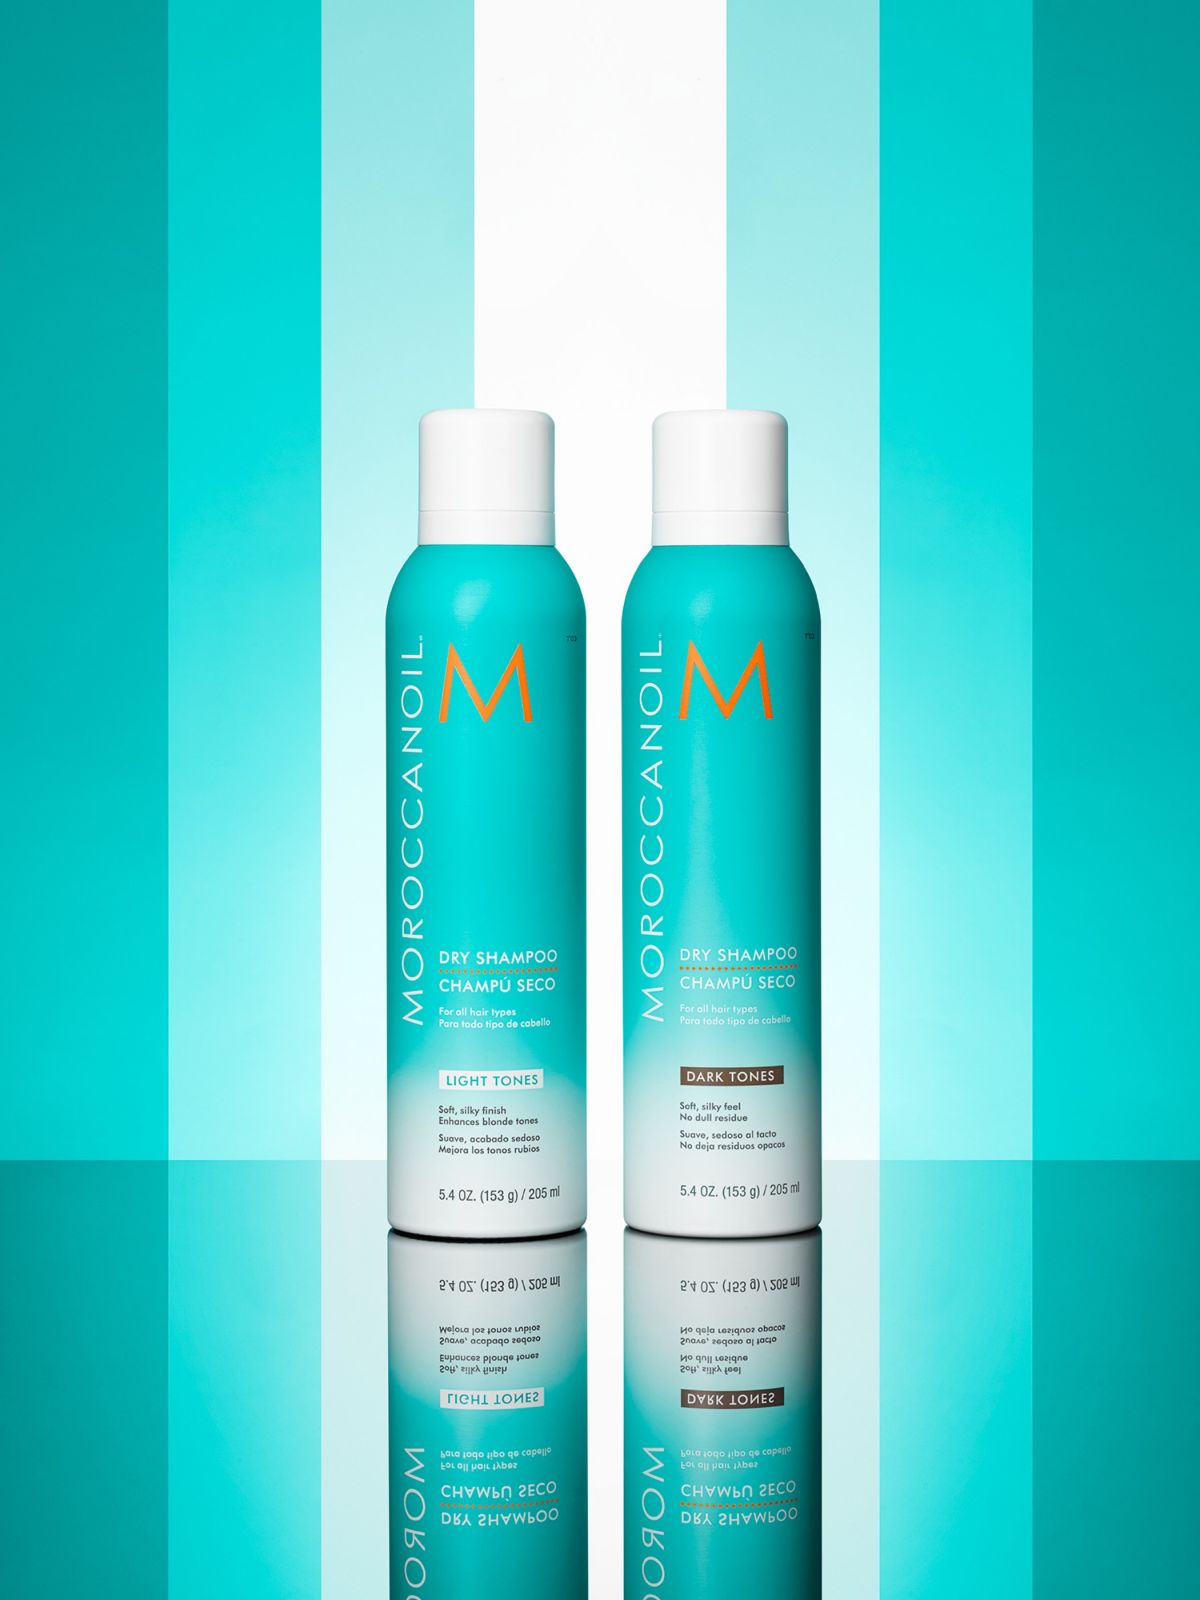  שמפו יבש לגוון שיער בהיר Dry shampoo light tones של MOROCCANOIL